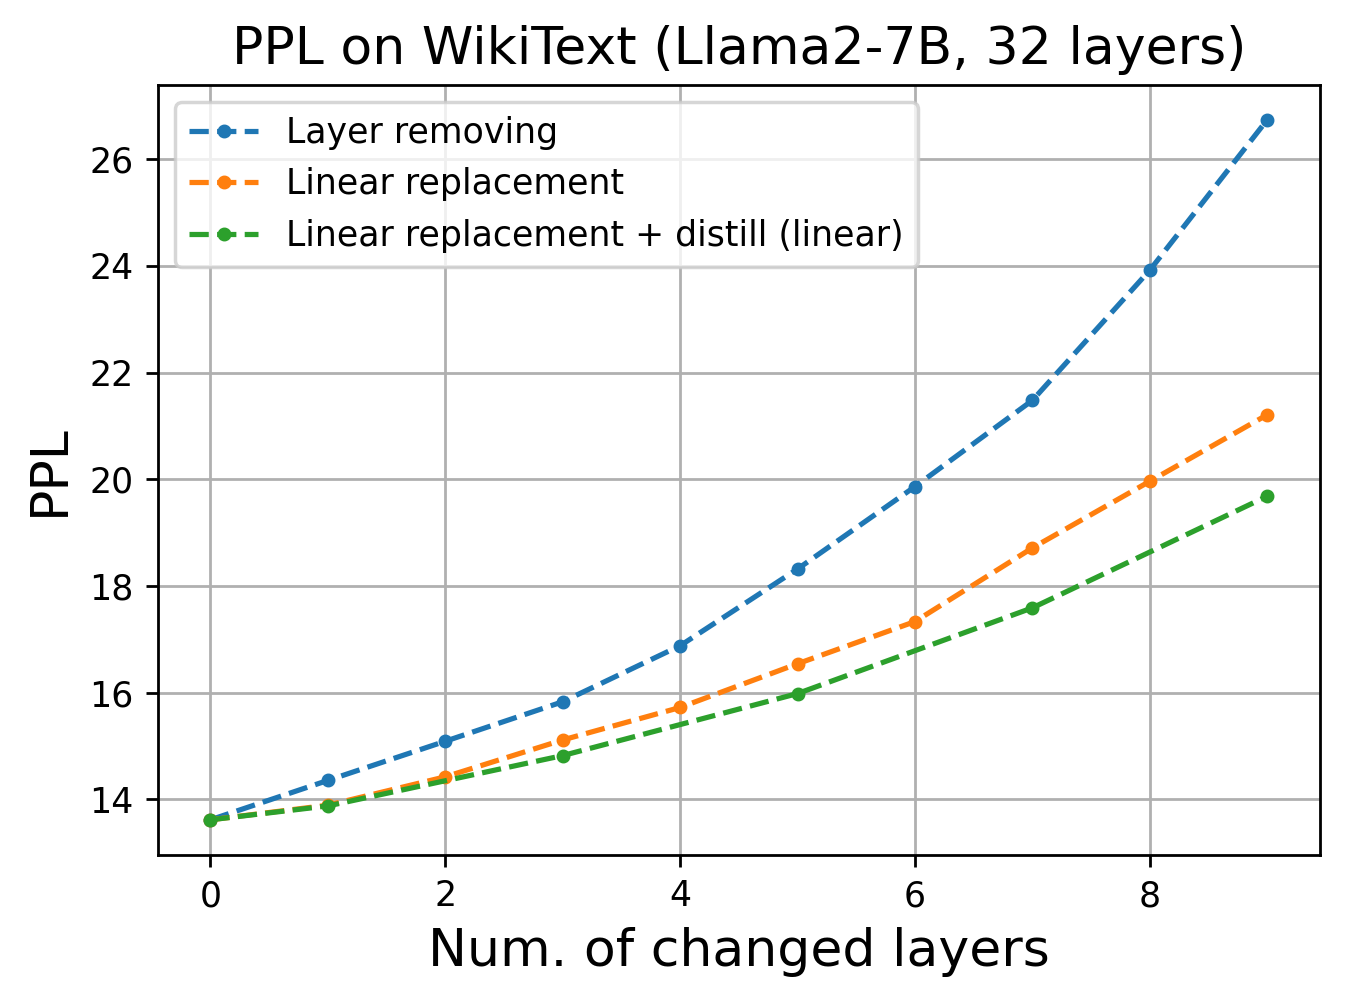 Перплексия для Llama-2-7B на WikiText при выкидывании части слоёв из модели, при линейной замене слоёв и при последующем дообучении всех новых линейных слоёв одновременно